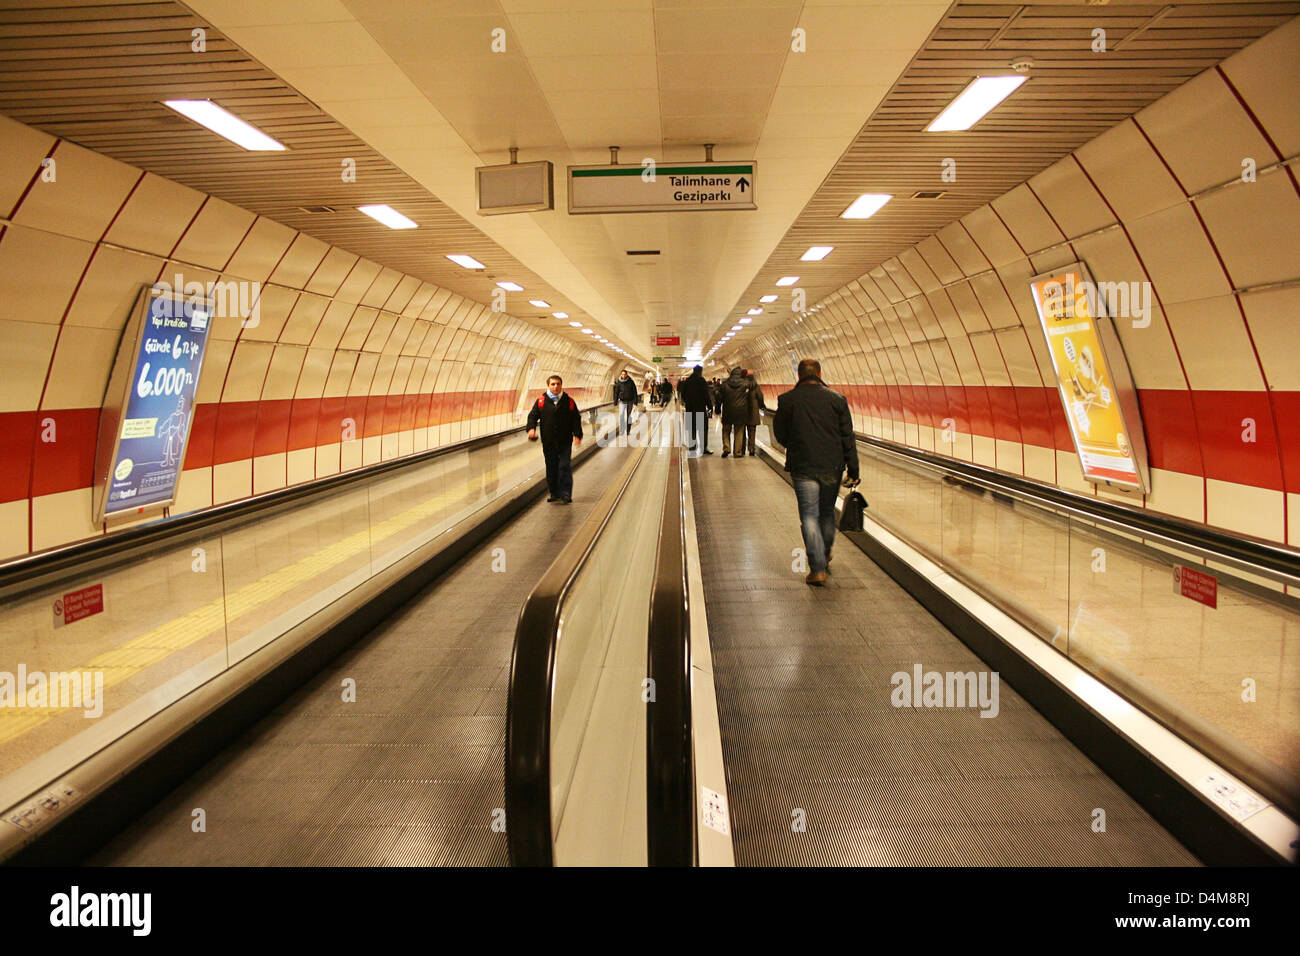 Vue de la station de métro Taksim à Istanbul, Turquie Banque D'Images